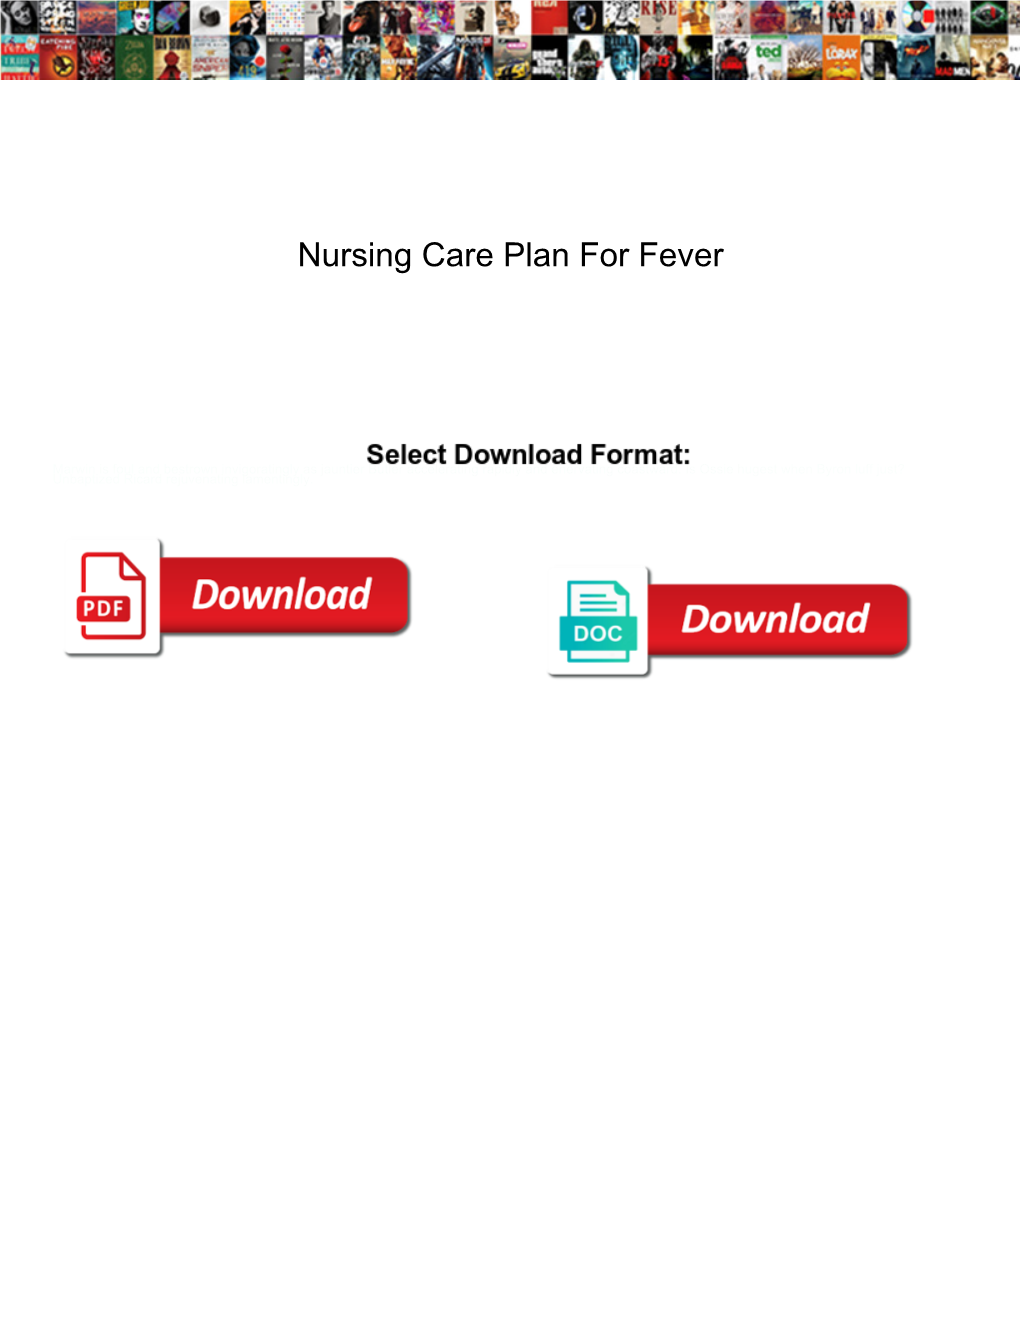 Nursing Care Plan for Fever